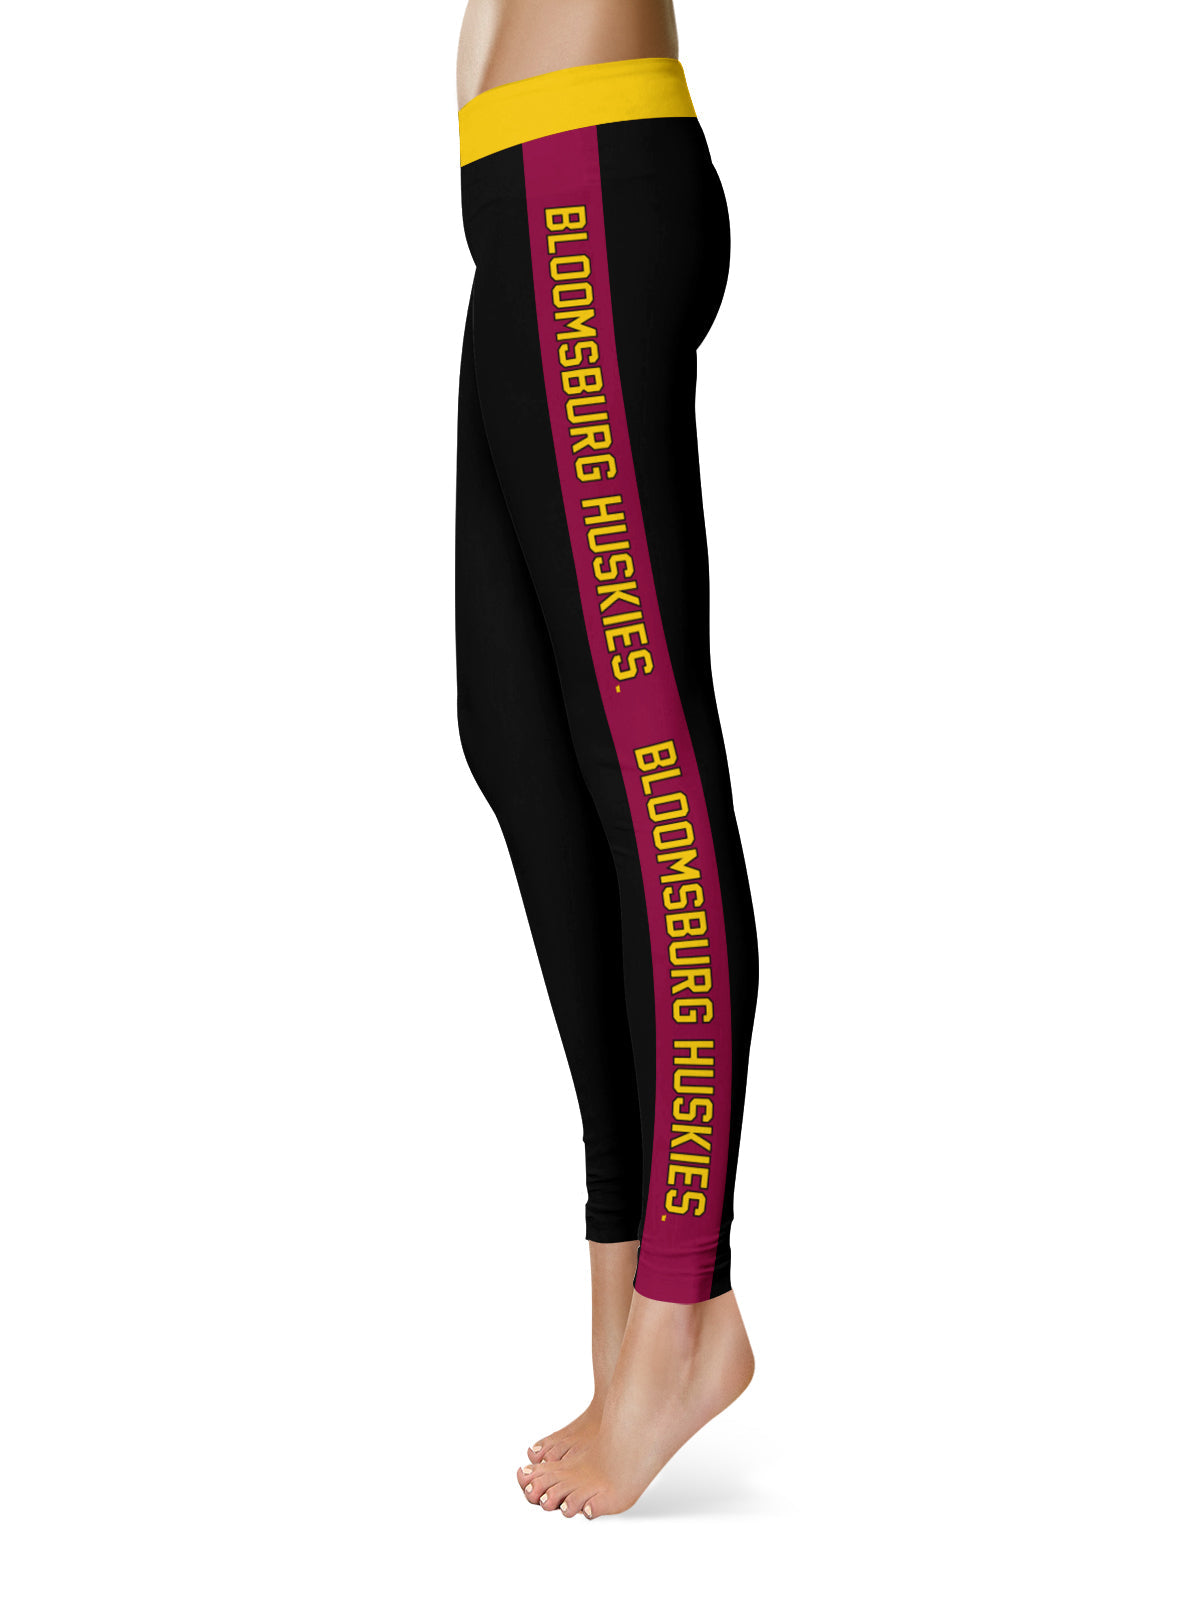 Bloomsburg University Huskies Vive La Fete Game Day Collegiate Maroon Stripes Women Black Yoga Leggings 2 Waist Tights